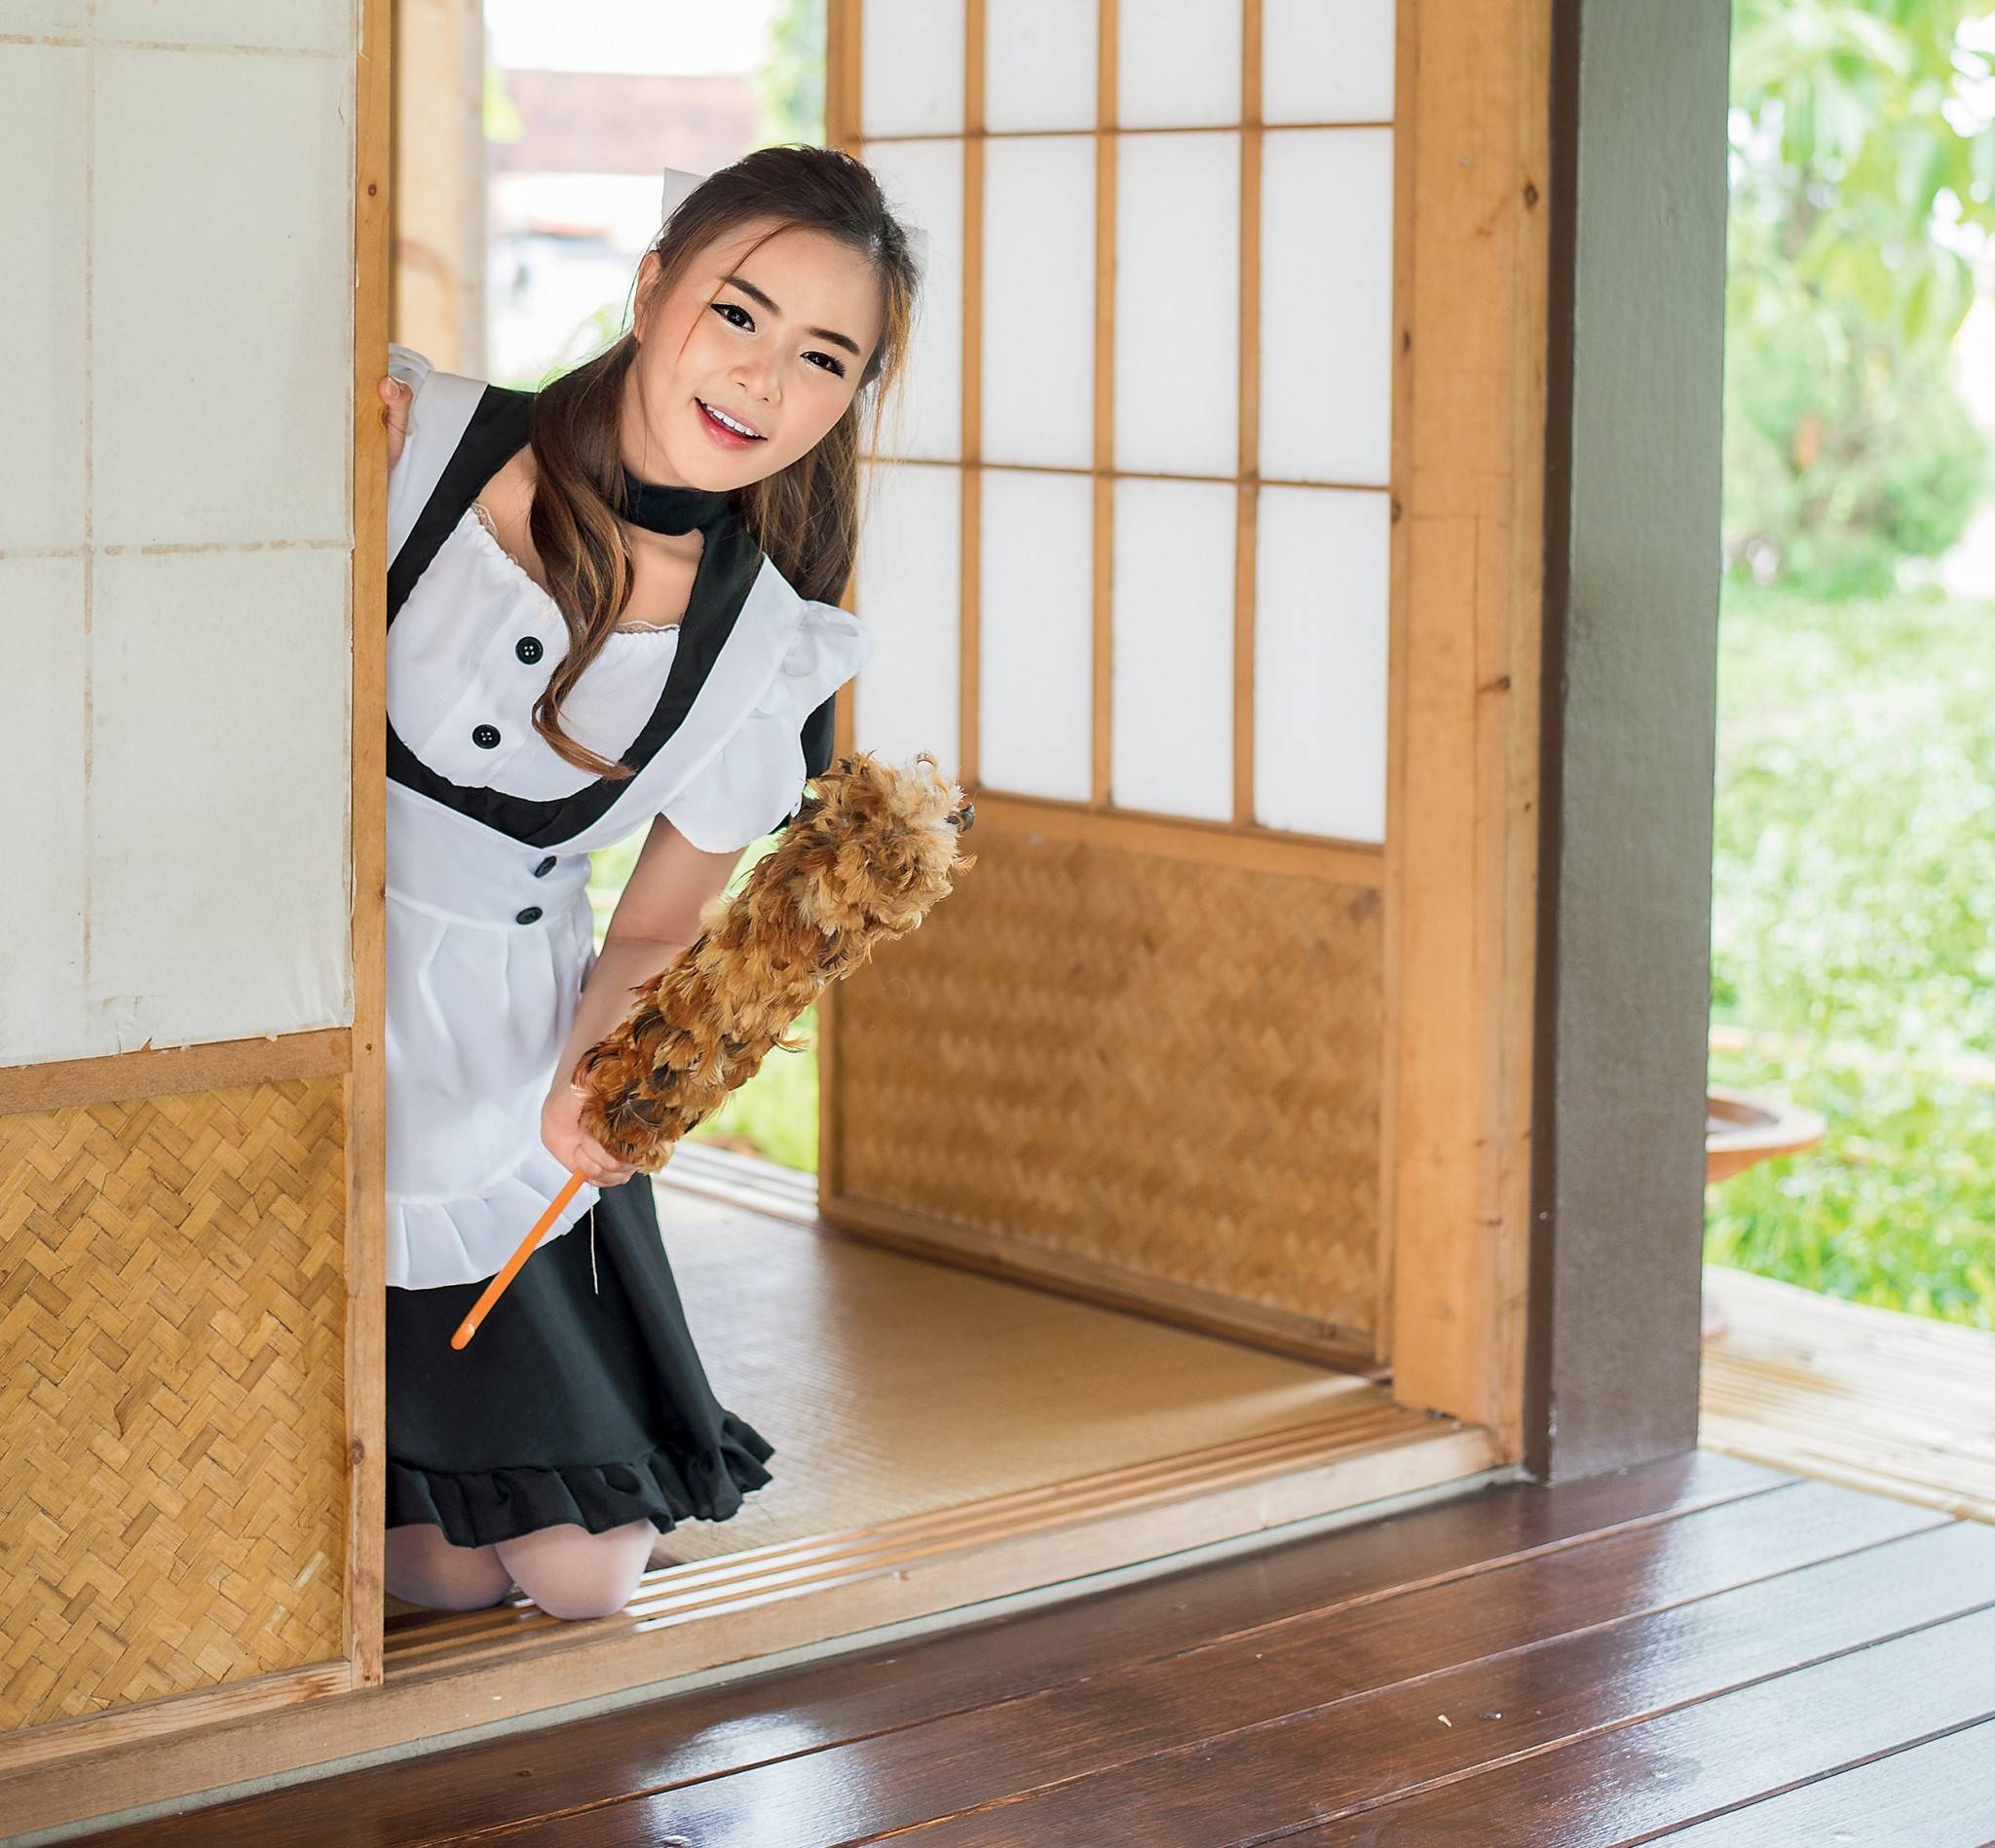 Восточная мудрость на страже чистоты: 5 принципов уборки, которых придерживаются японцы